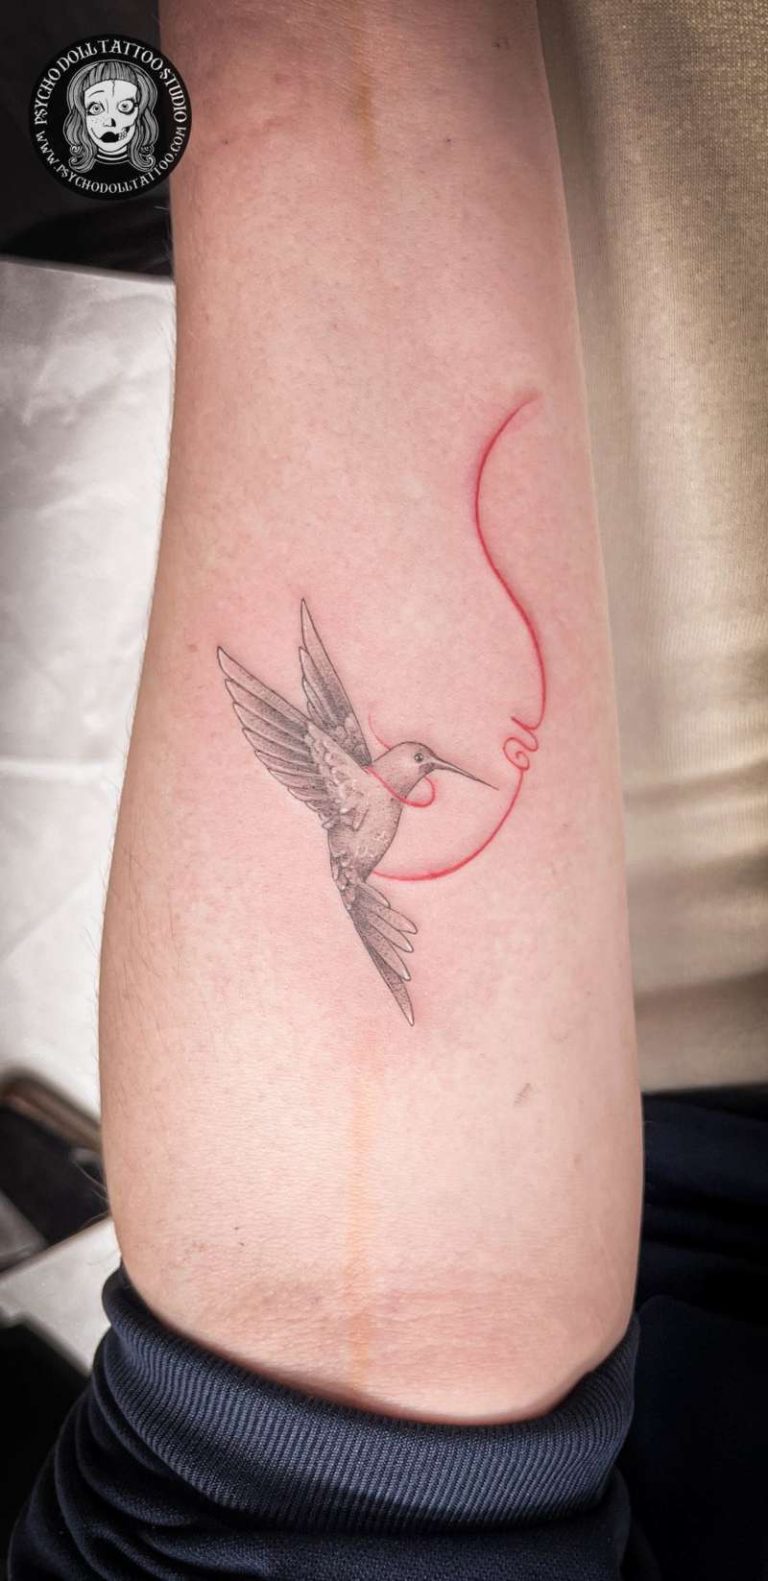 Tatuaje colibrí con inicial e hilo rojo